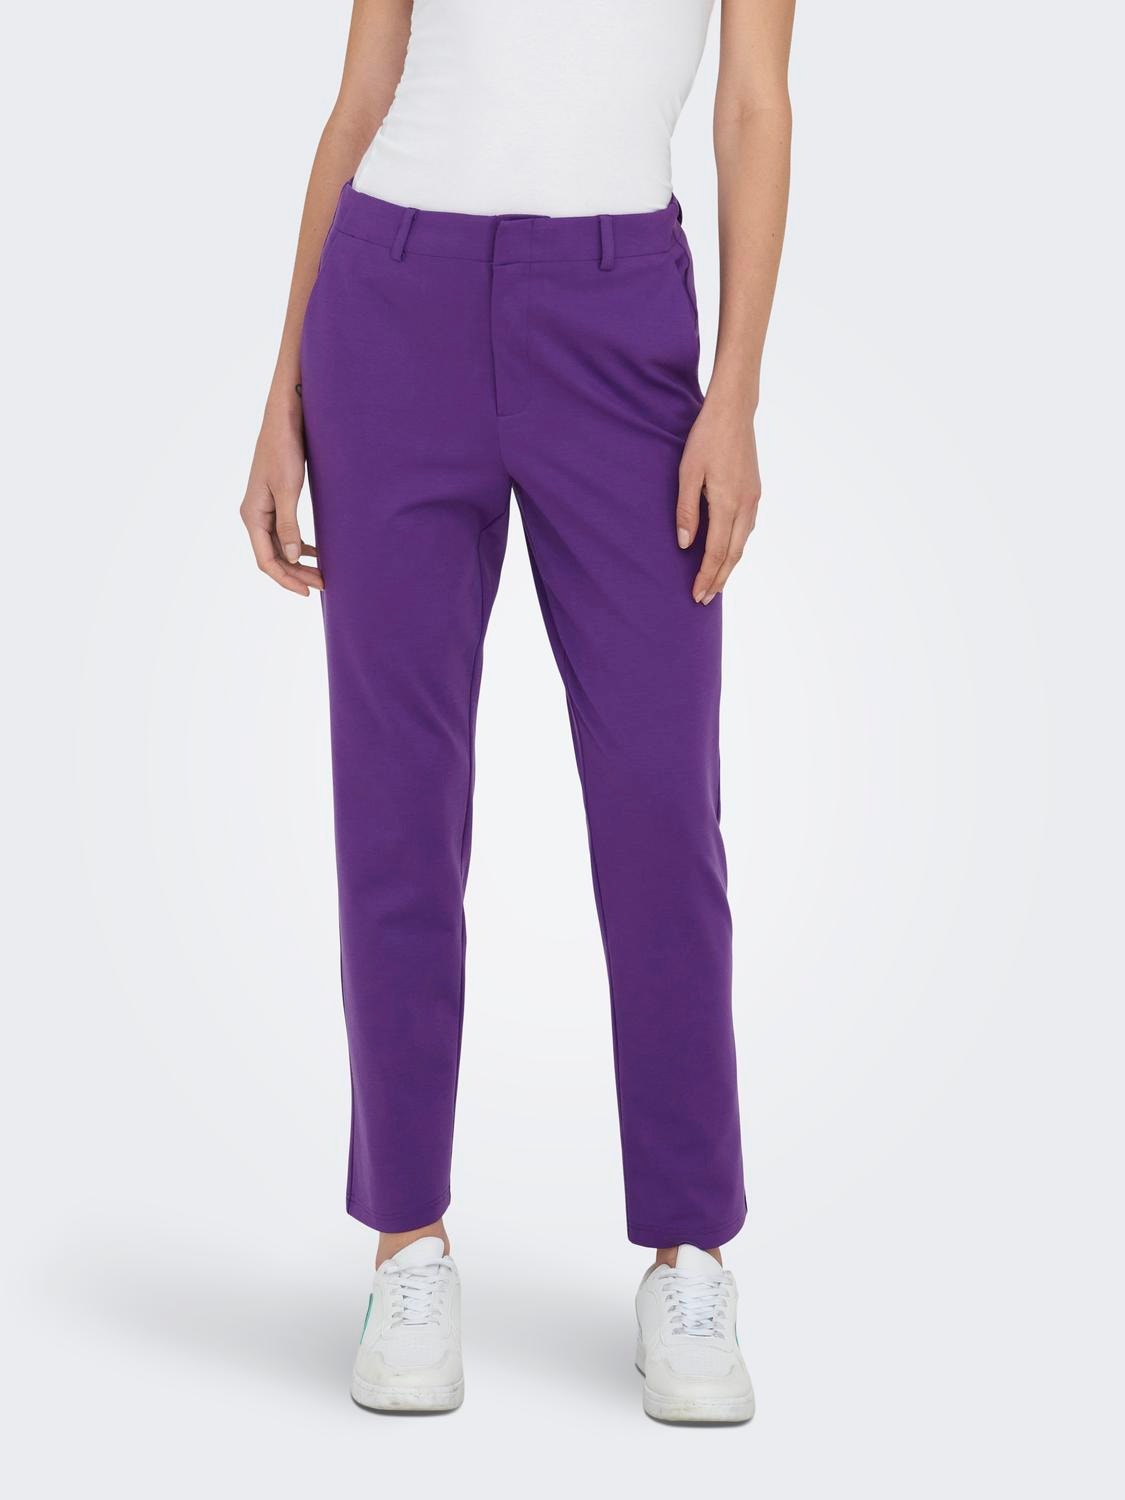 Pantalon droit taille ajustable Liberto violet foncé fille